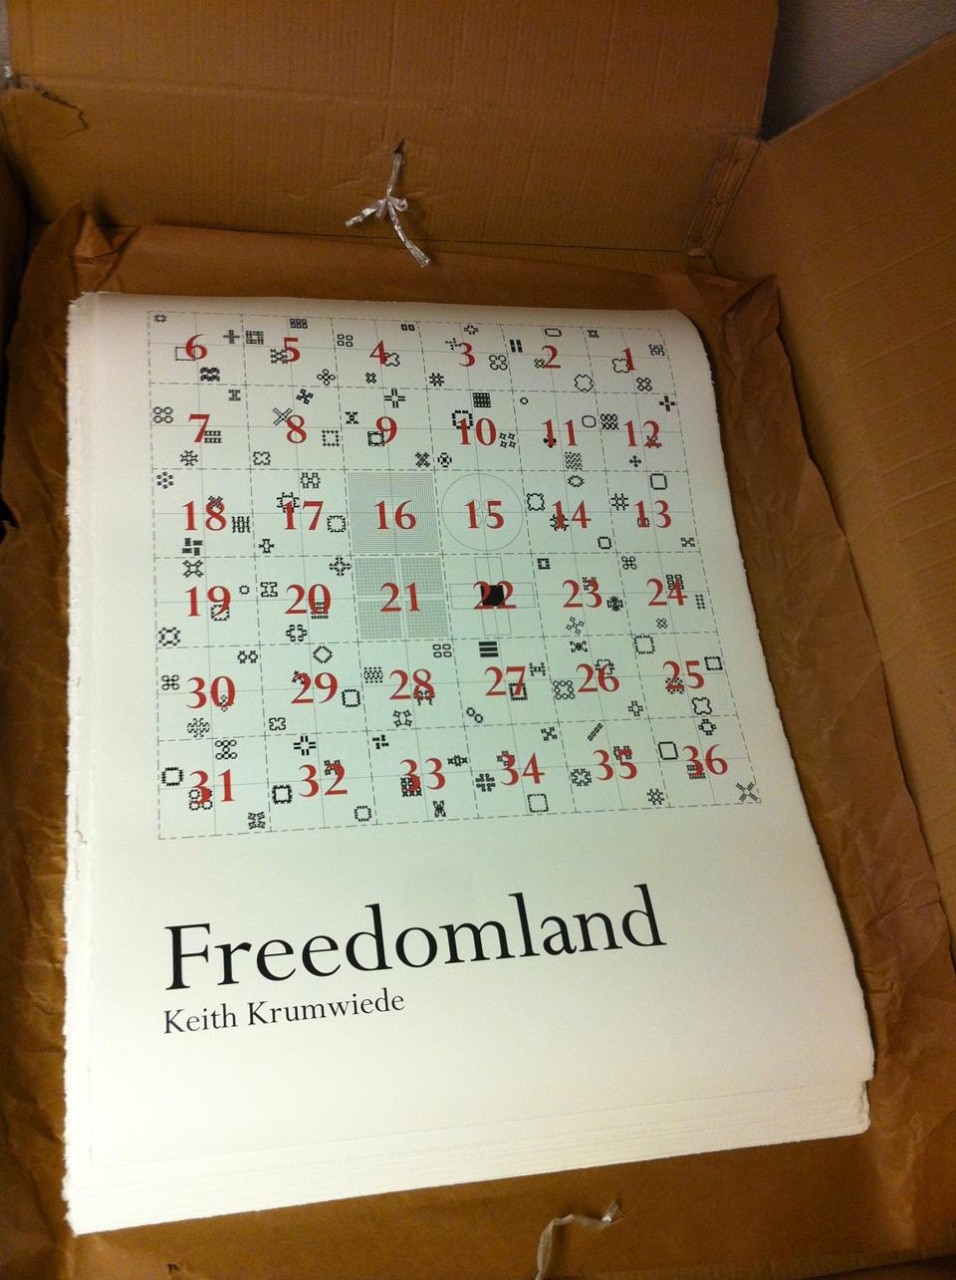 Keith Krumwiede, <em>Freedomland</em>, poster